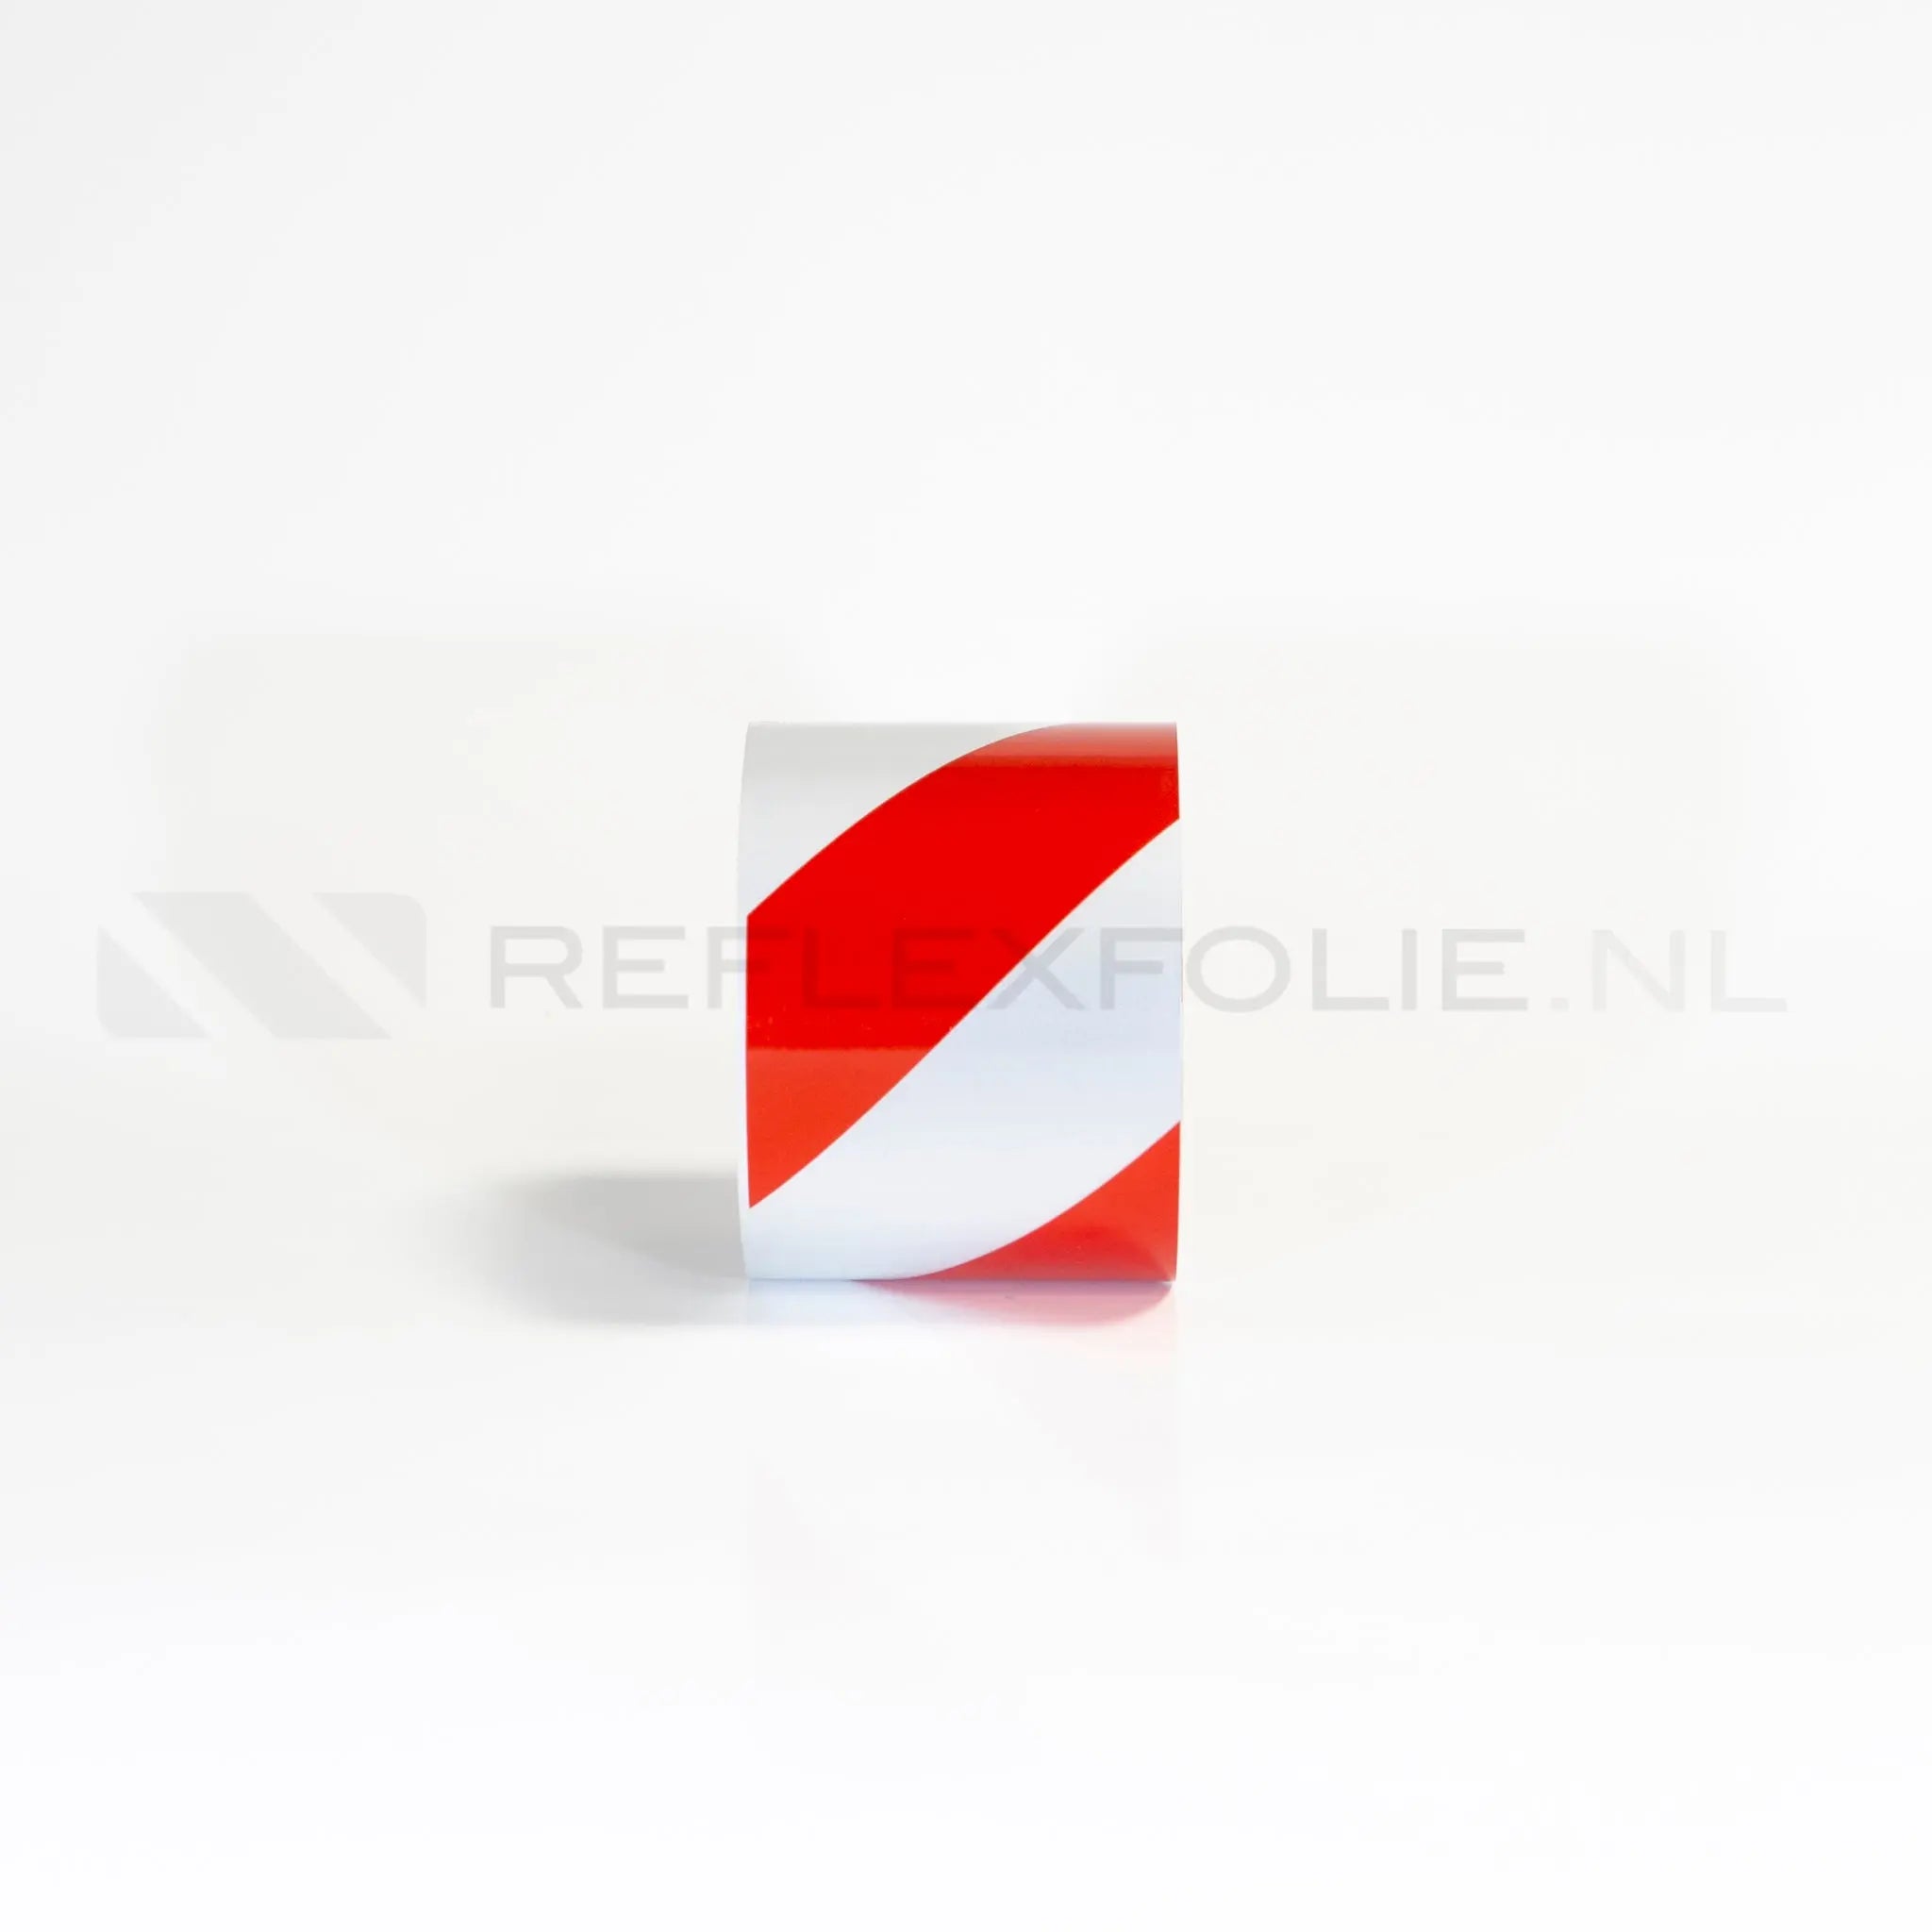 Markeringsband rood/wit linkswijzend 100 mm per meter - Reflexfolie